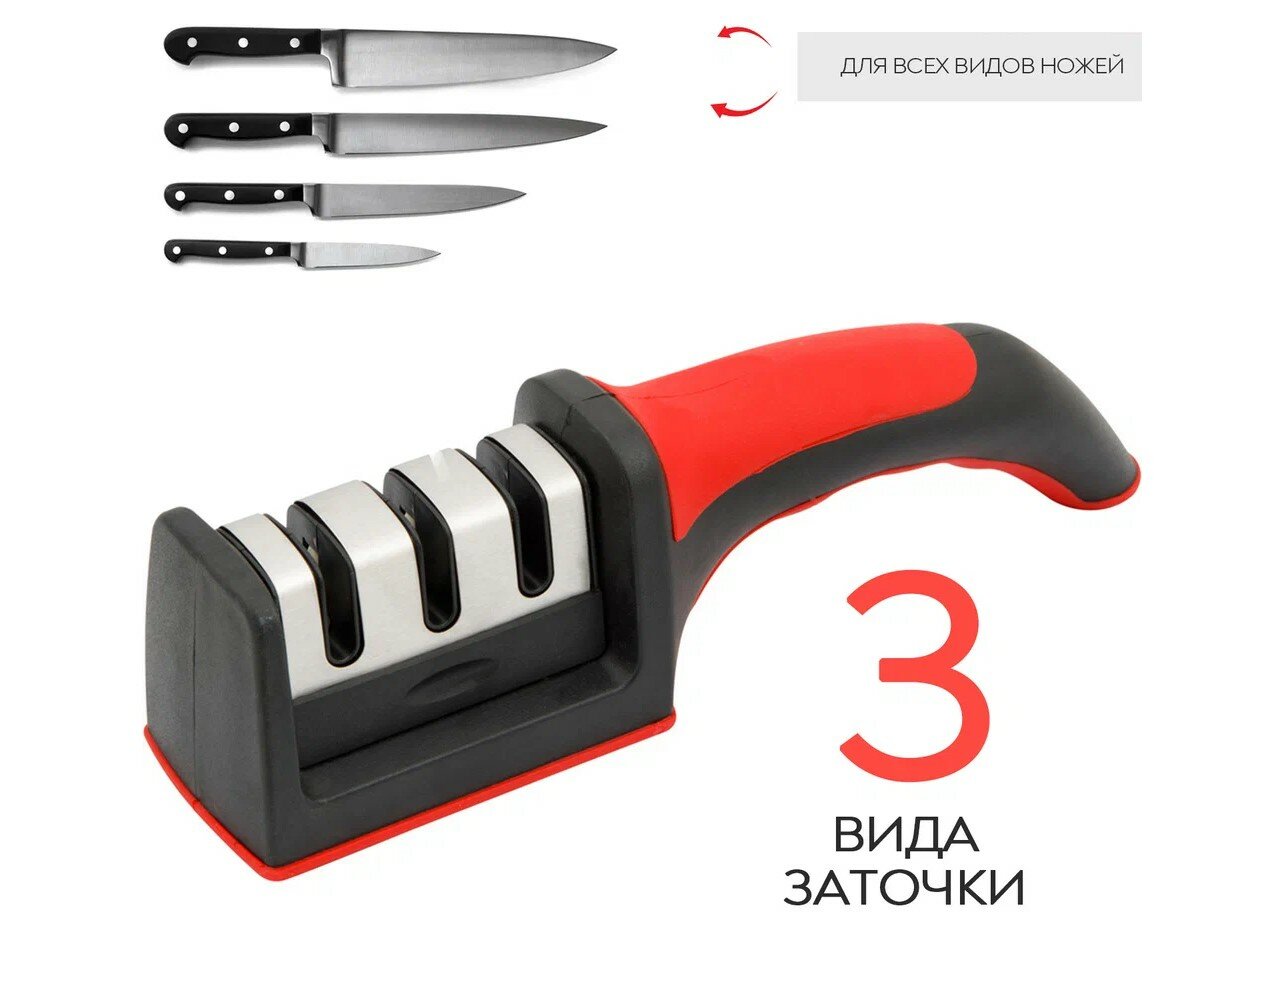 Точилка для ножей Гармония жизни, ножниц, cтанок для заточки ножей, ножеточка, точильный камень для доводки ножей